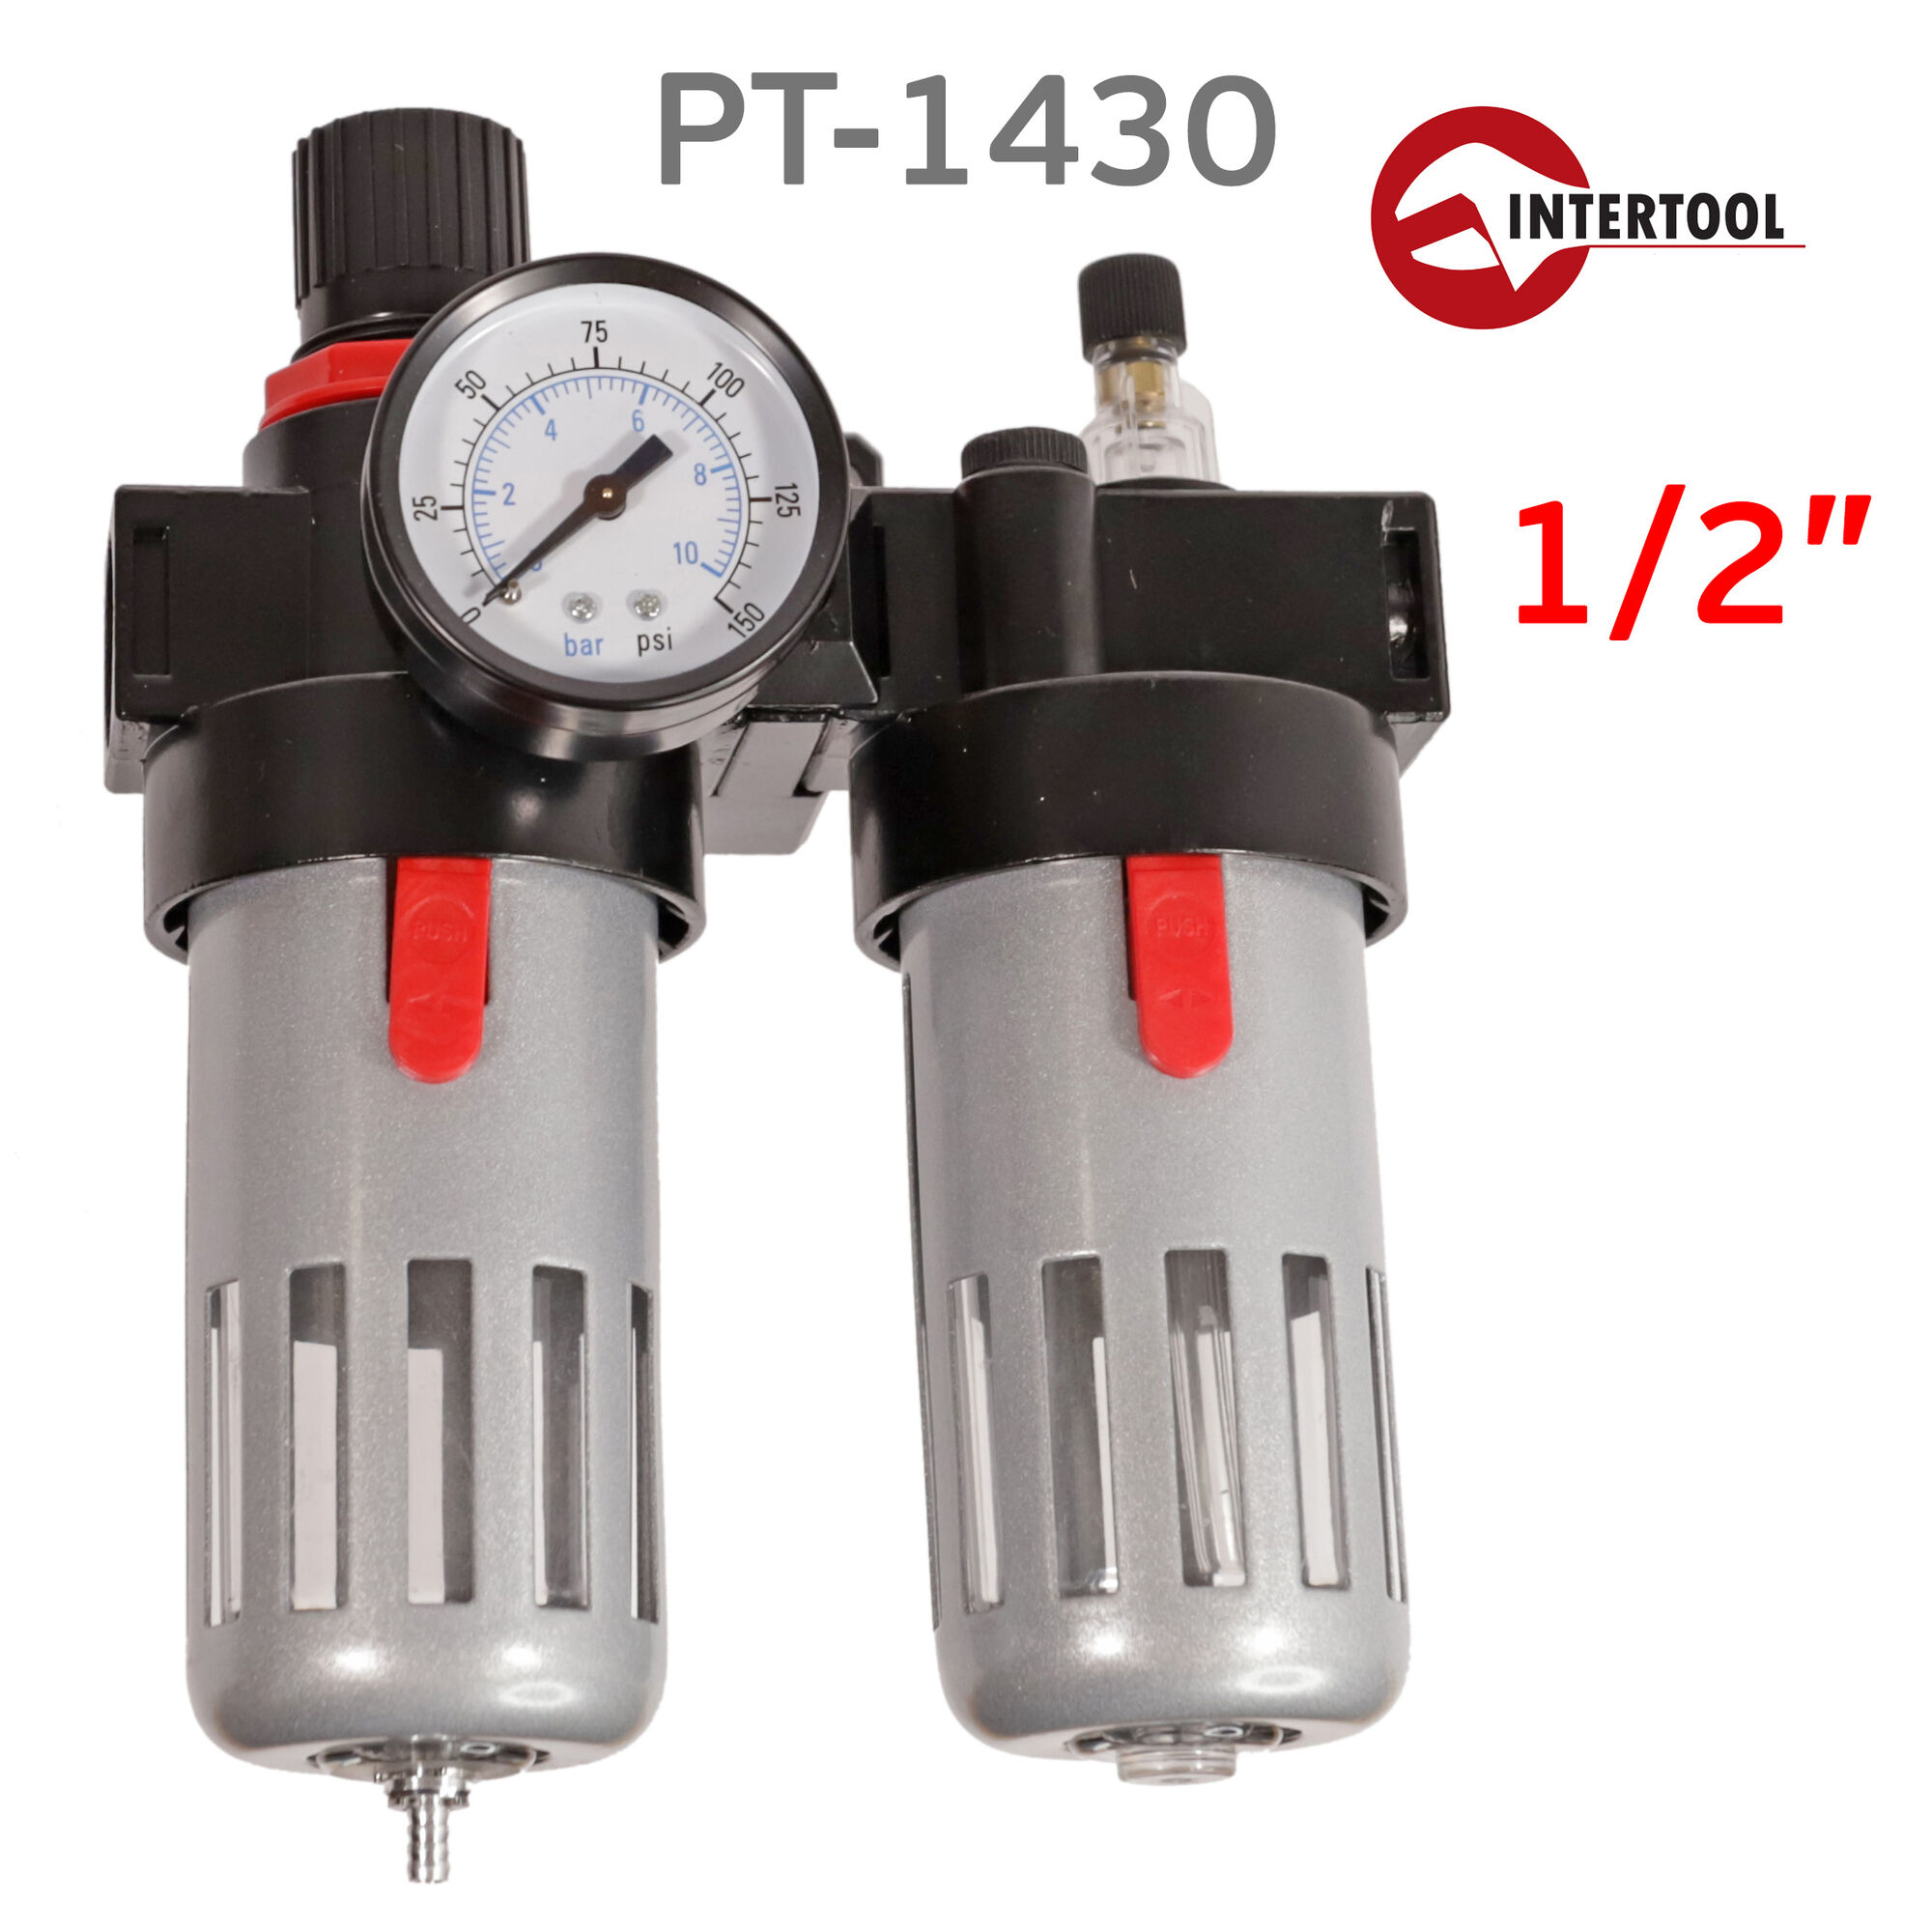 Фильтр-редуктор-лубрикатор (1/2") Intertool PT-1430 подготовка сжатого воздуха для пневмоинструмента